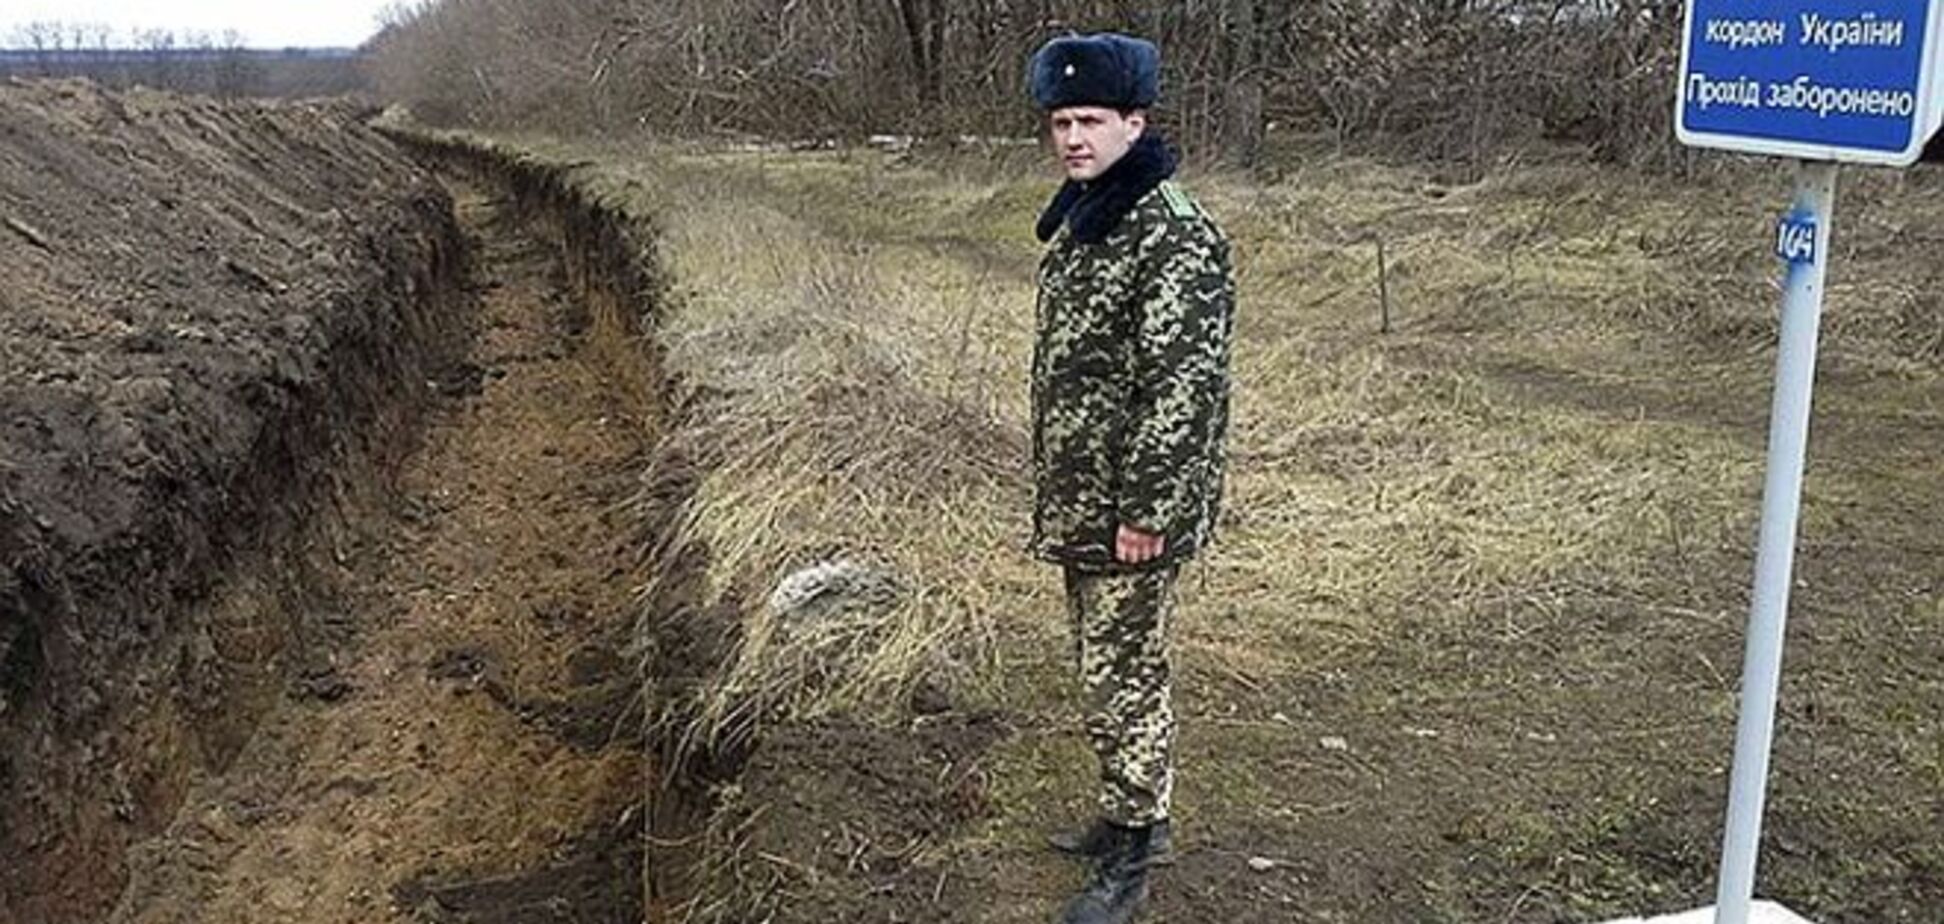 Советник Порошенко заявил, что на строительство проекта 'Стена' не хватает денег